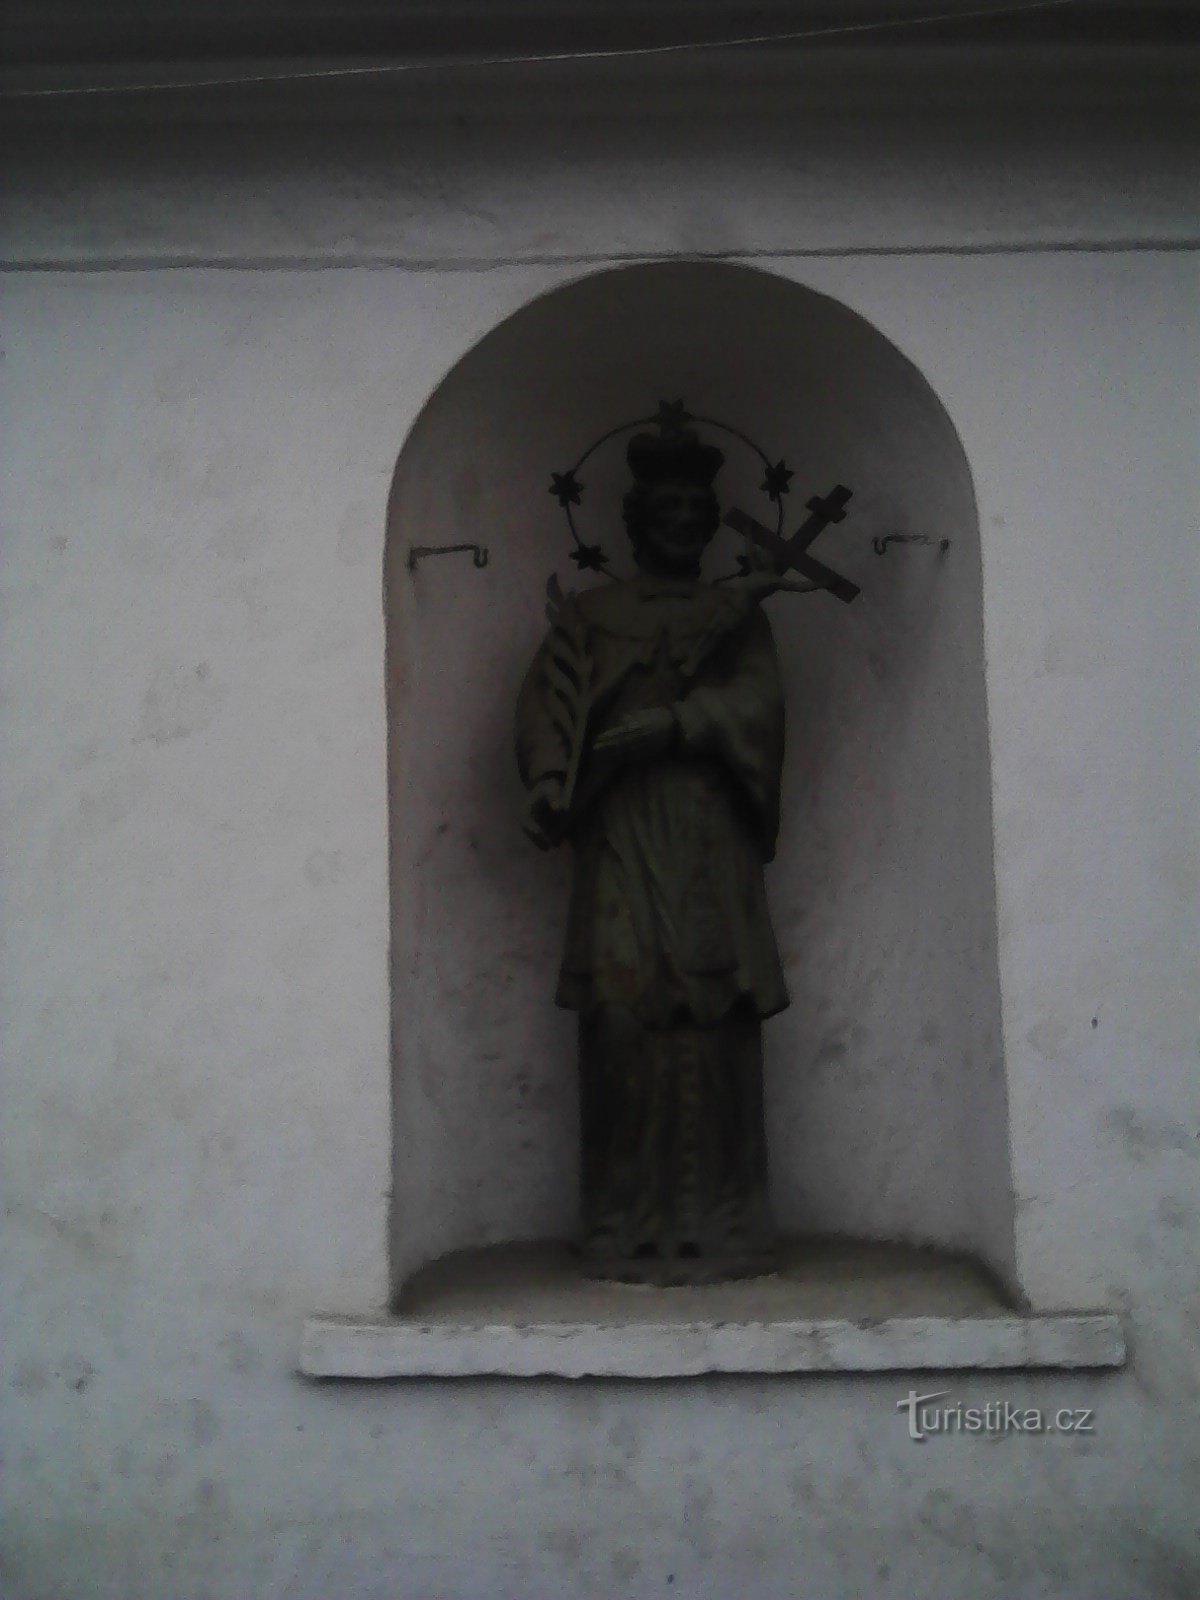 2. Άγαλμα του αγίου σε σπίτι στο Ομπράτανι.